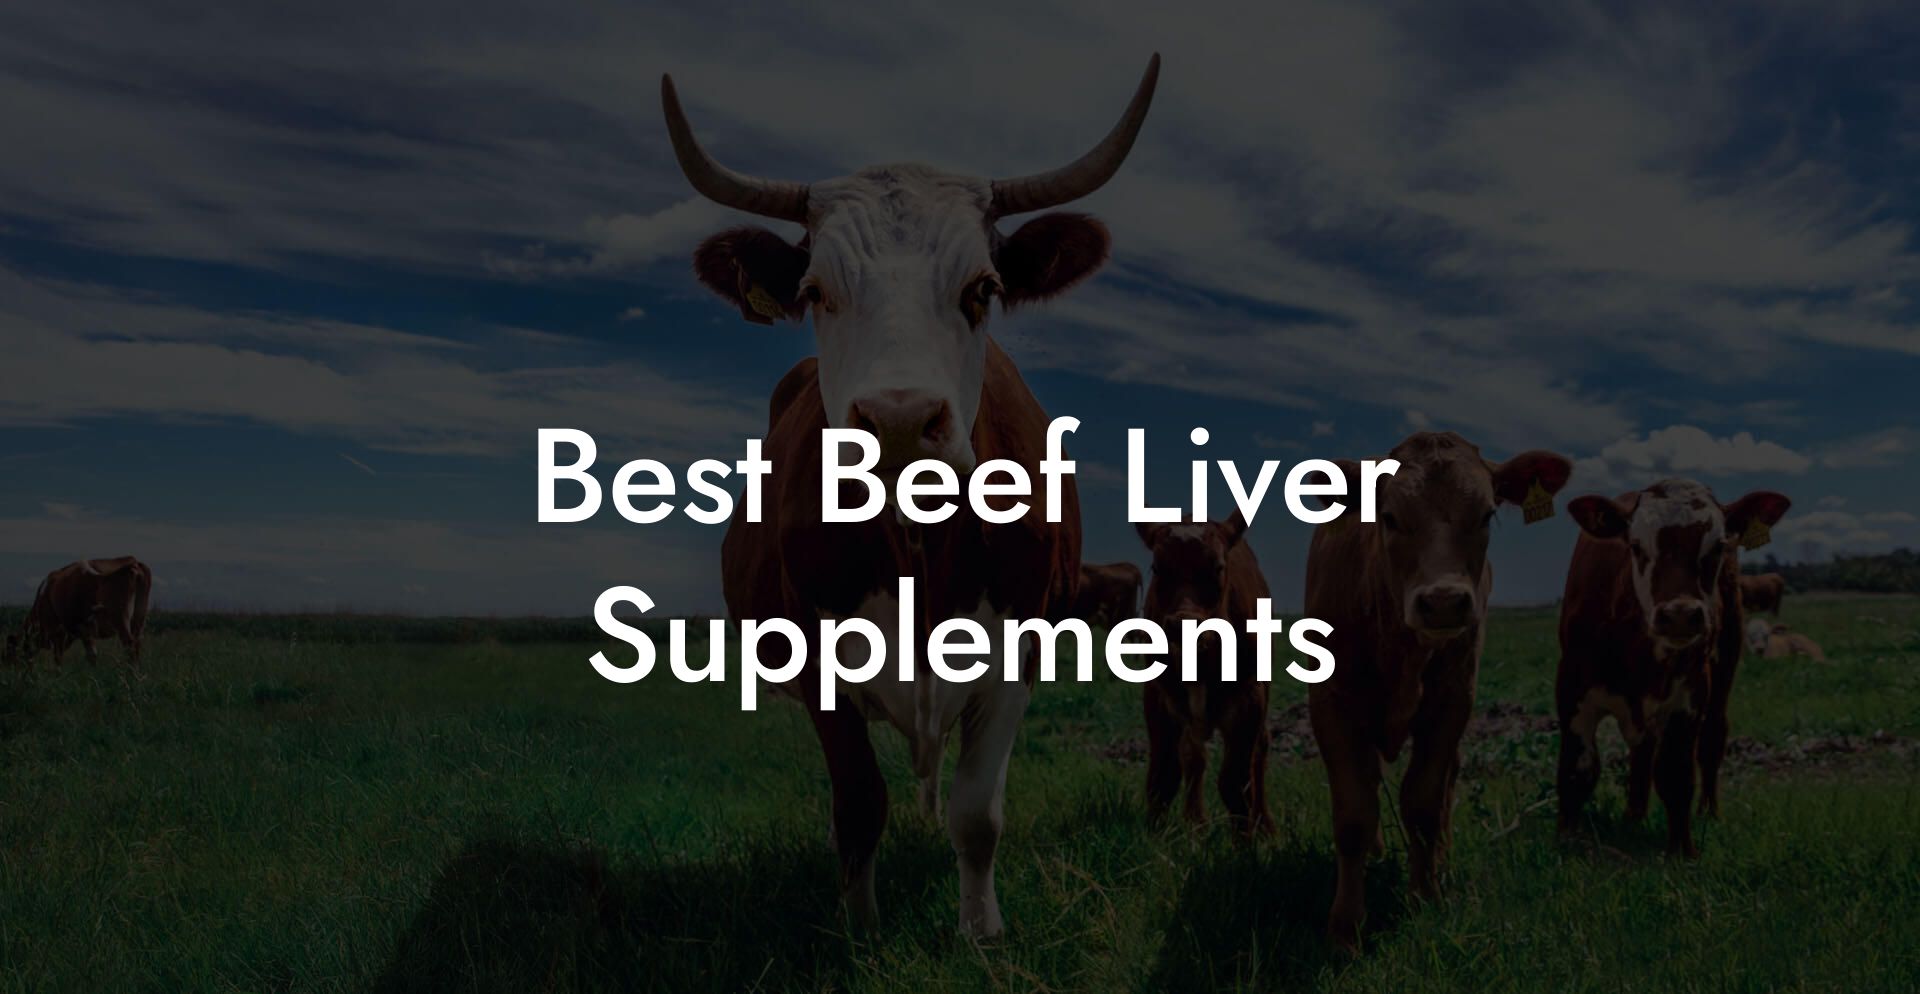 Best Beef Liver Supplements